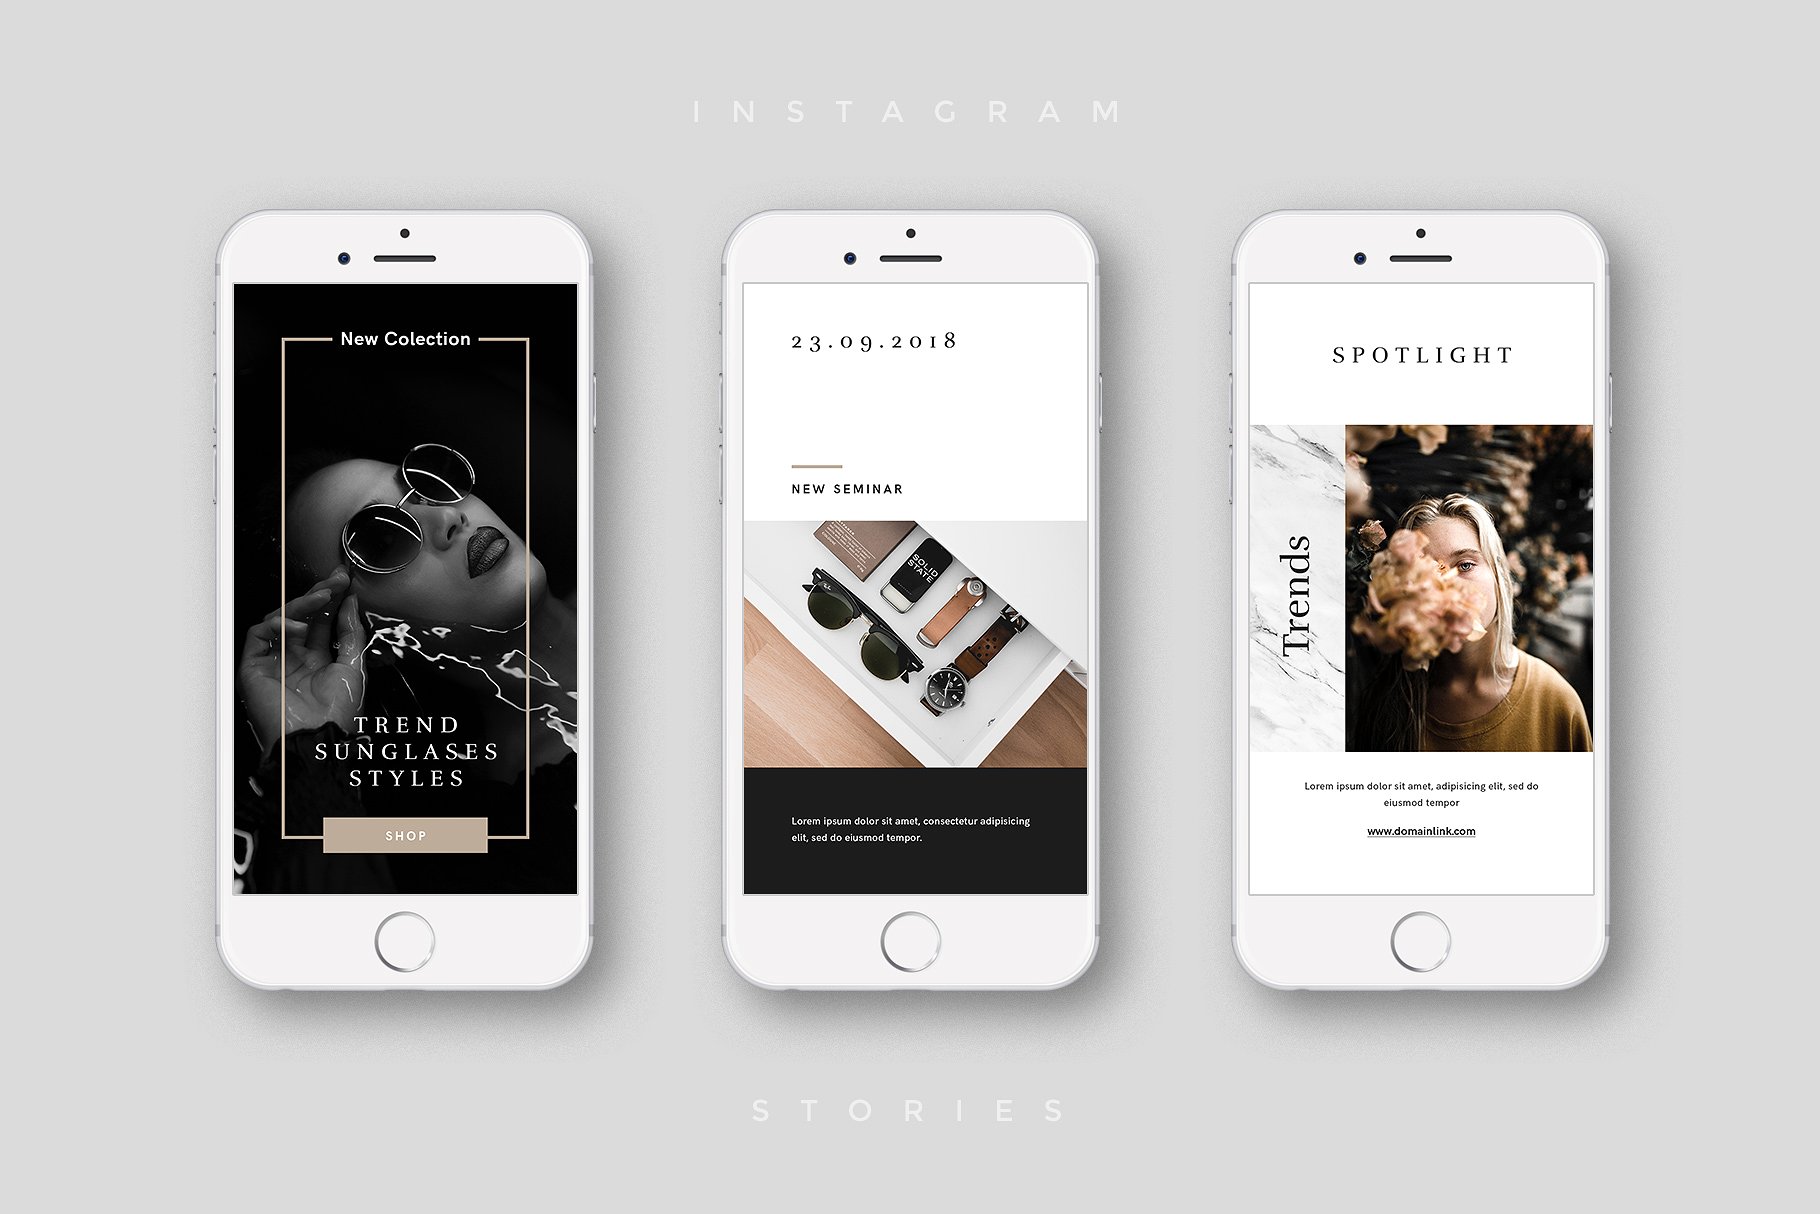 奢侈品电商社交媒体Ins故事贴图模板第一素材精选 Luxury Instagram Stories Pack插图(5)